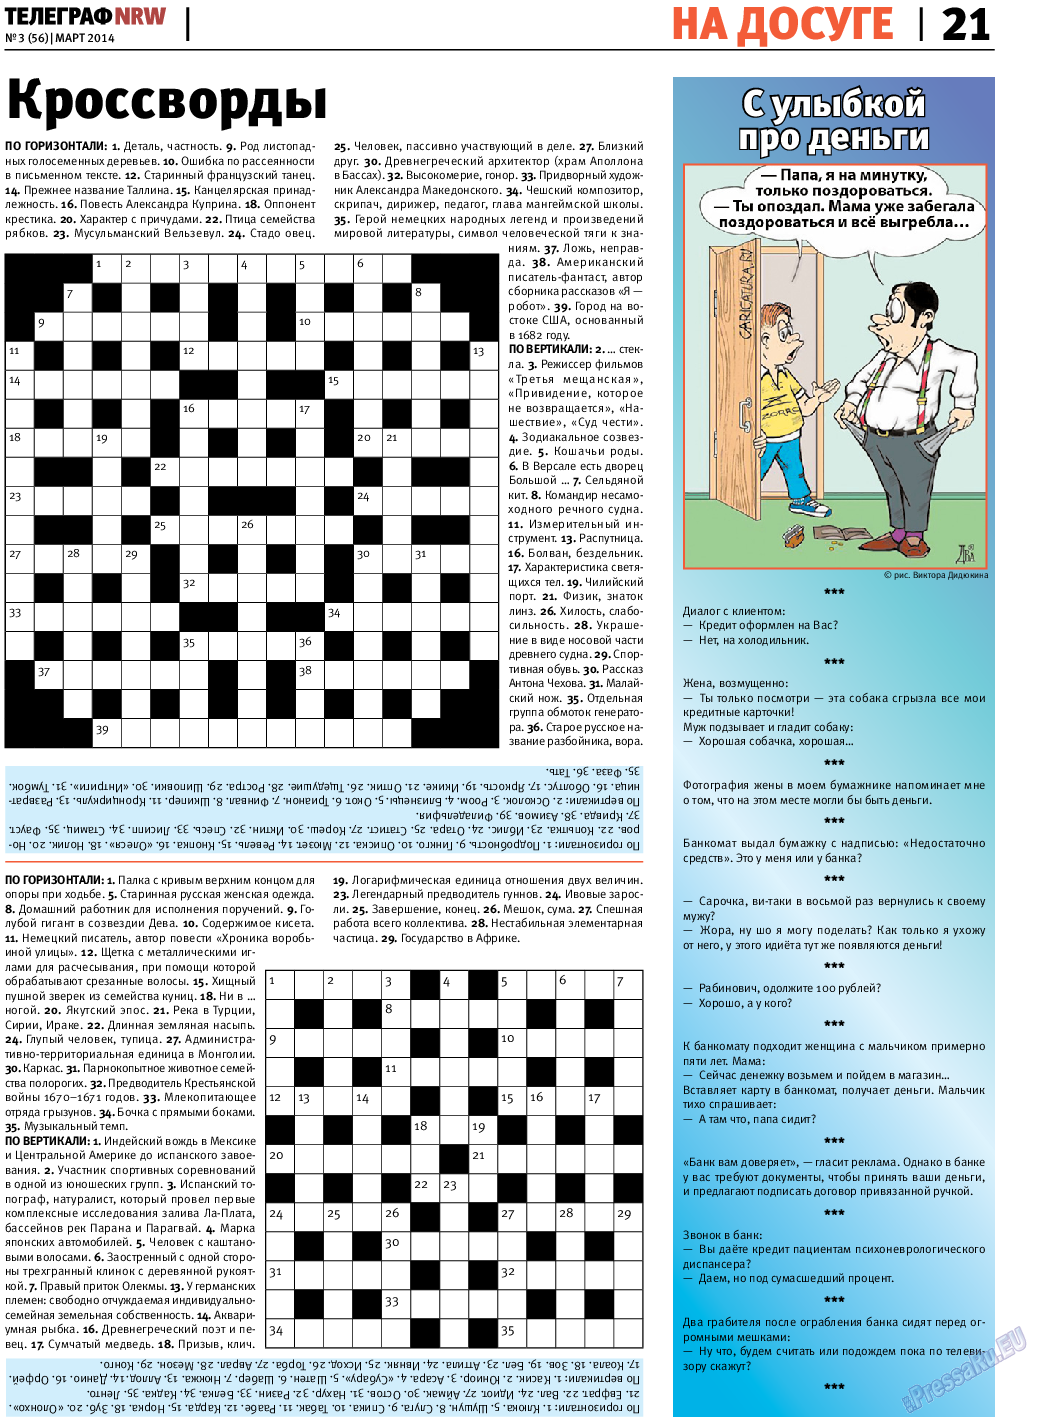 Телеграф NRW (газета). 2014 год, номер 3, стр. 21